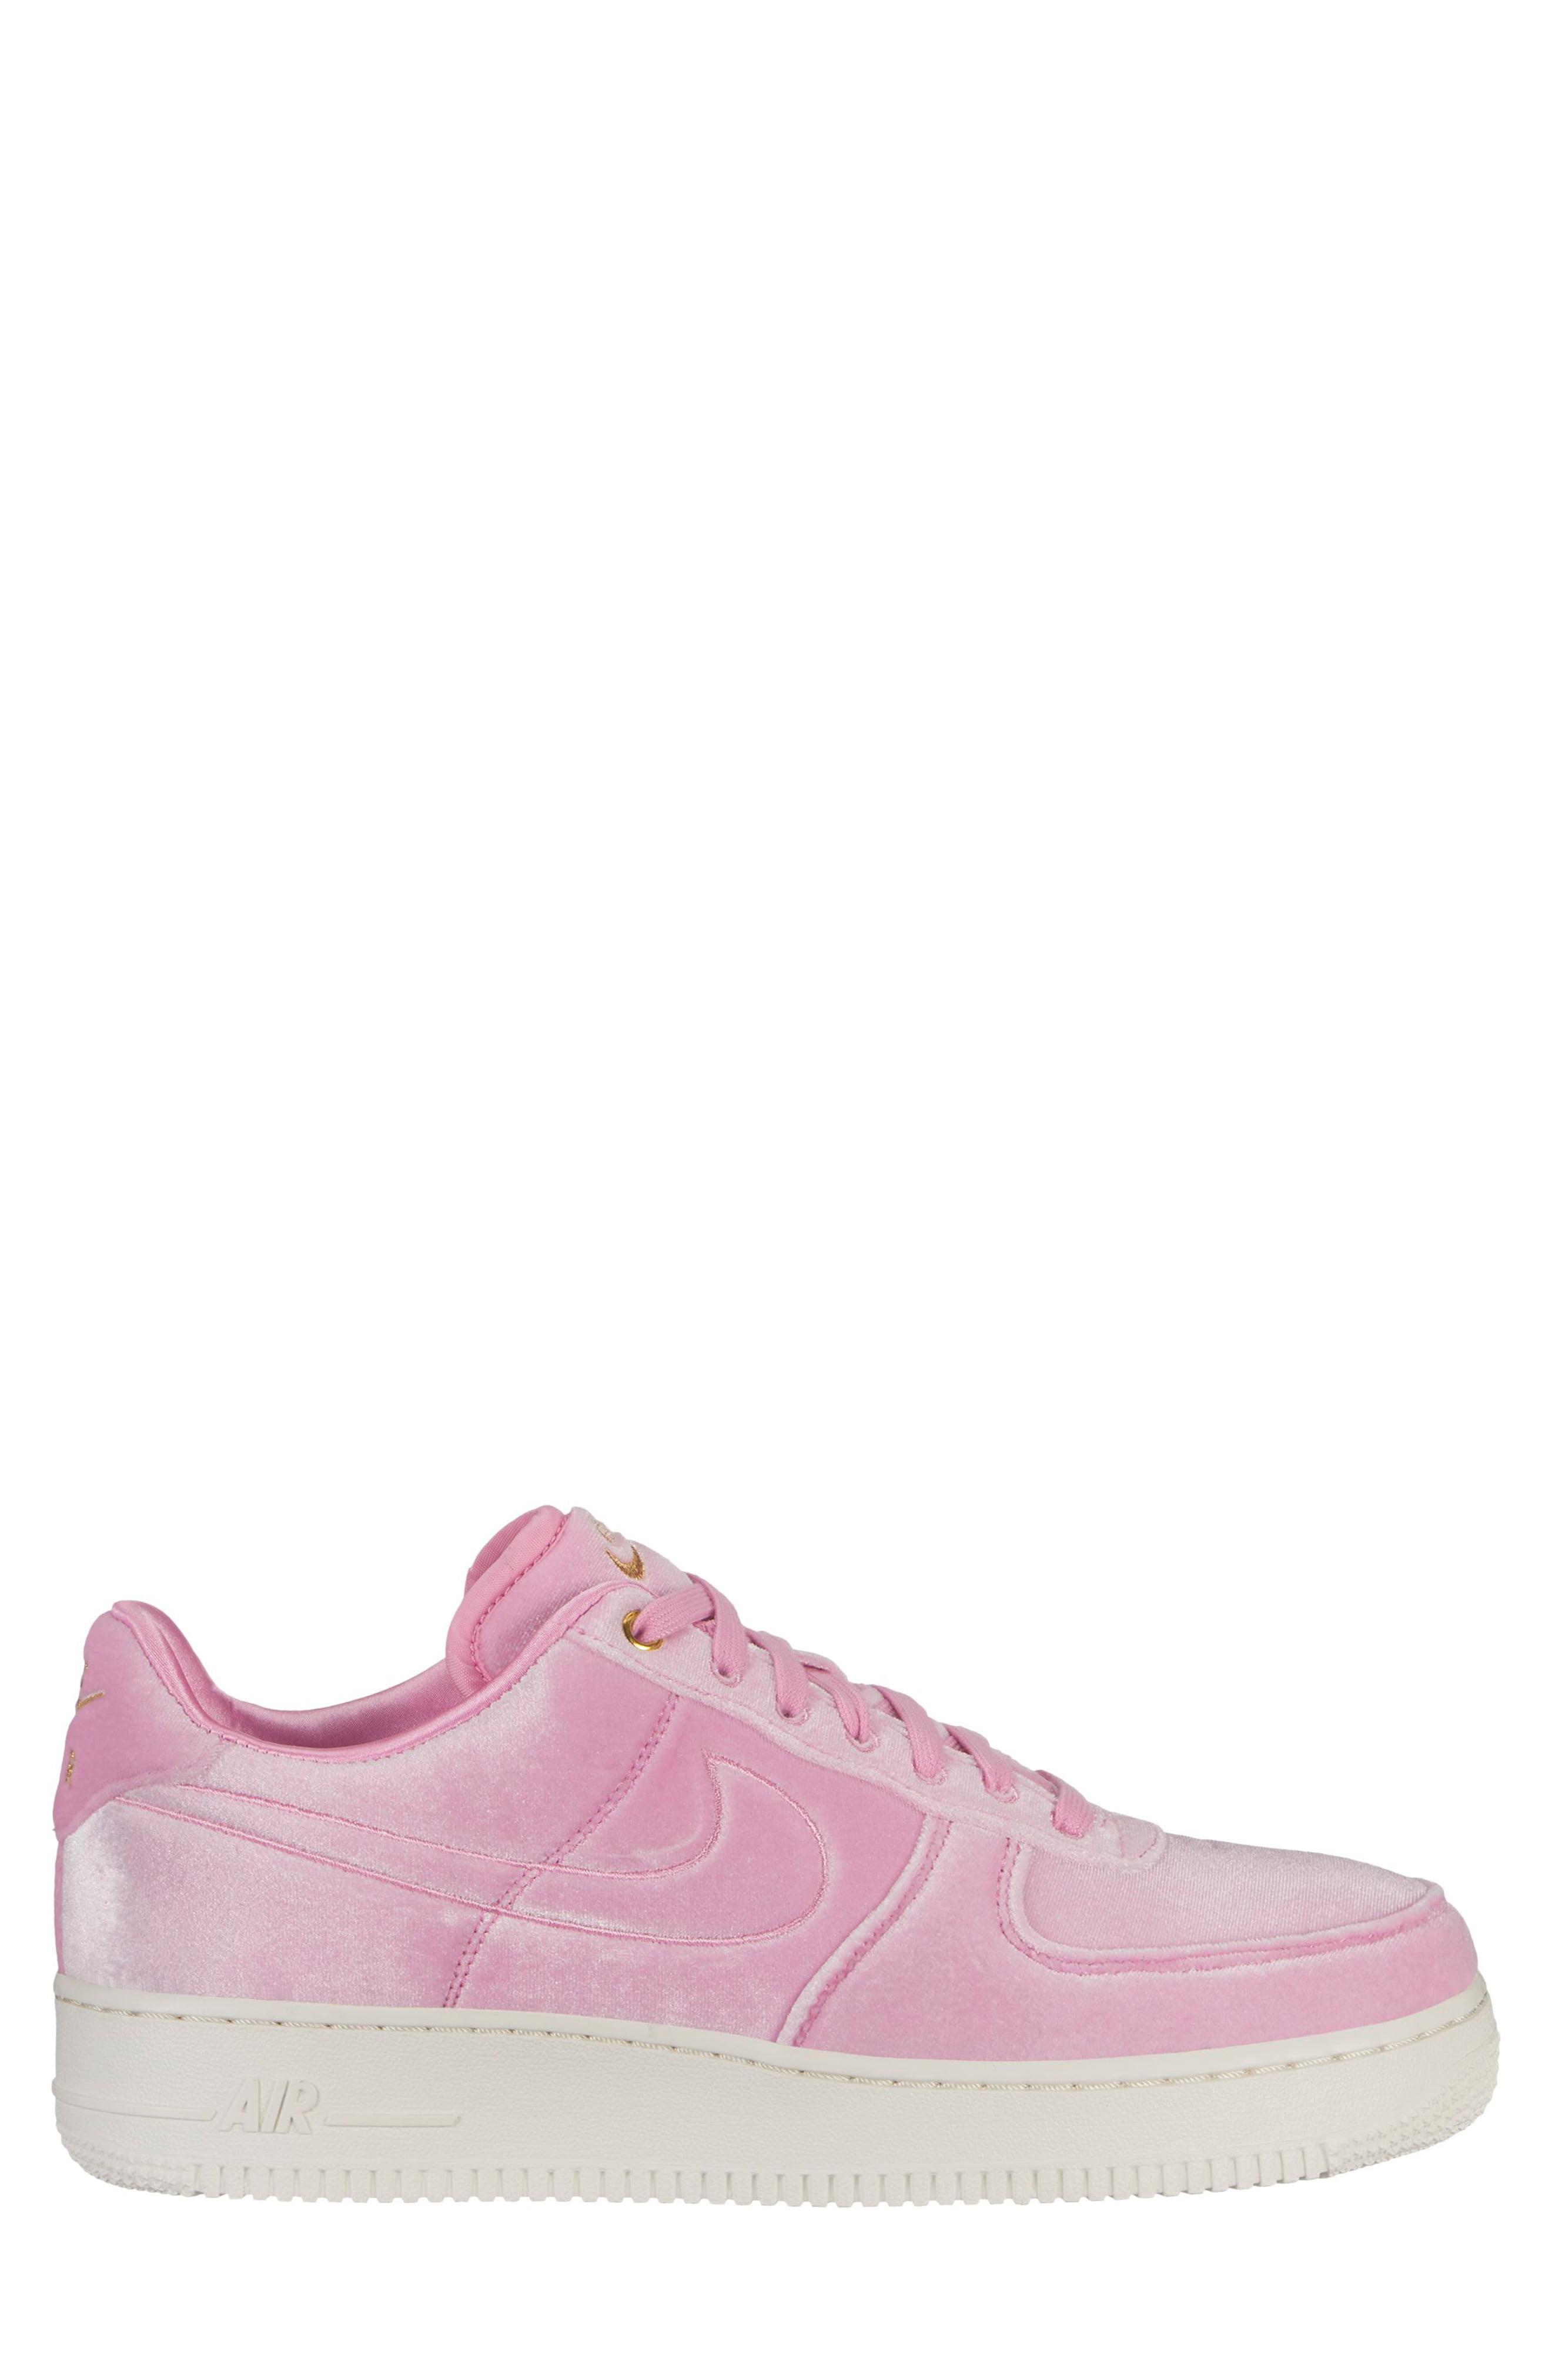 Lyst - Nike Air Force 1 '07 Premium 3 Sneaker in Pink for Men